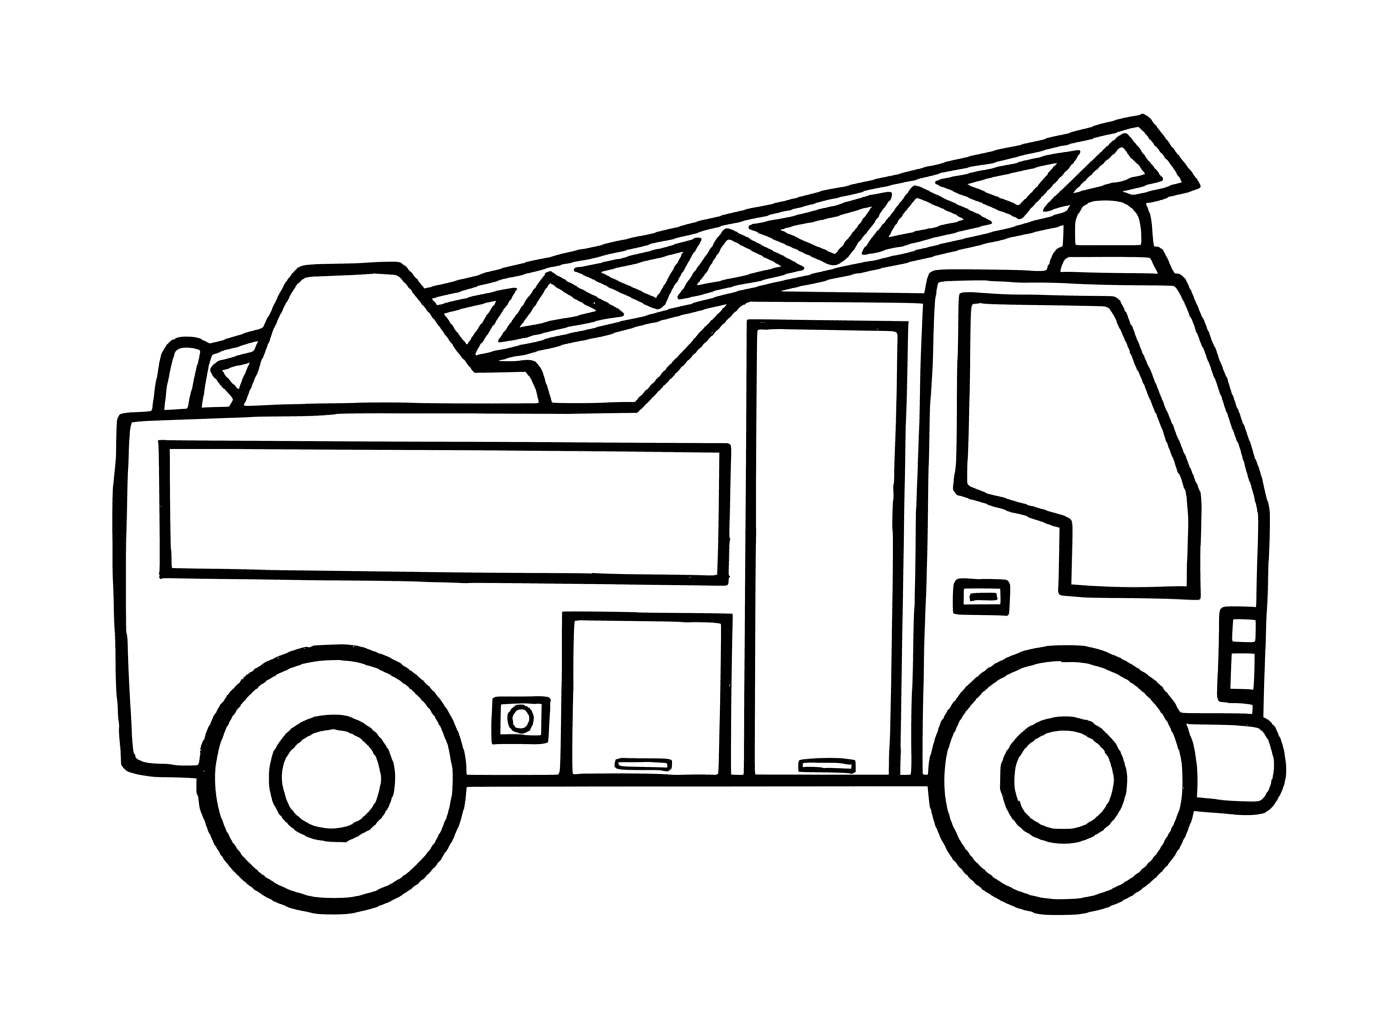   Un camion de pompiers pour la maternelle 